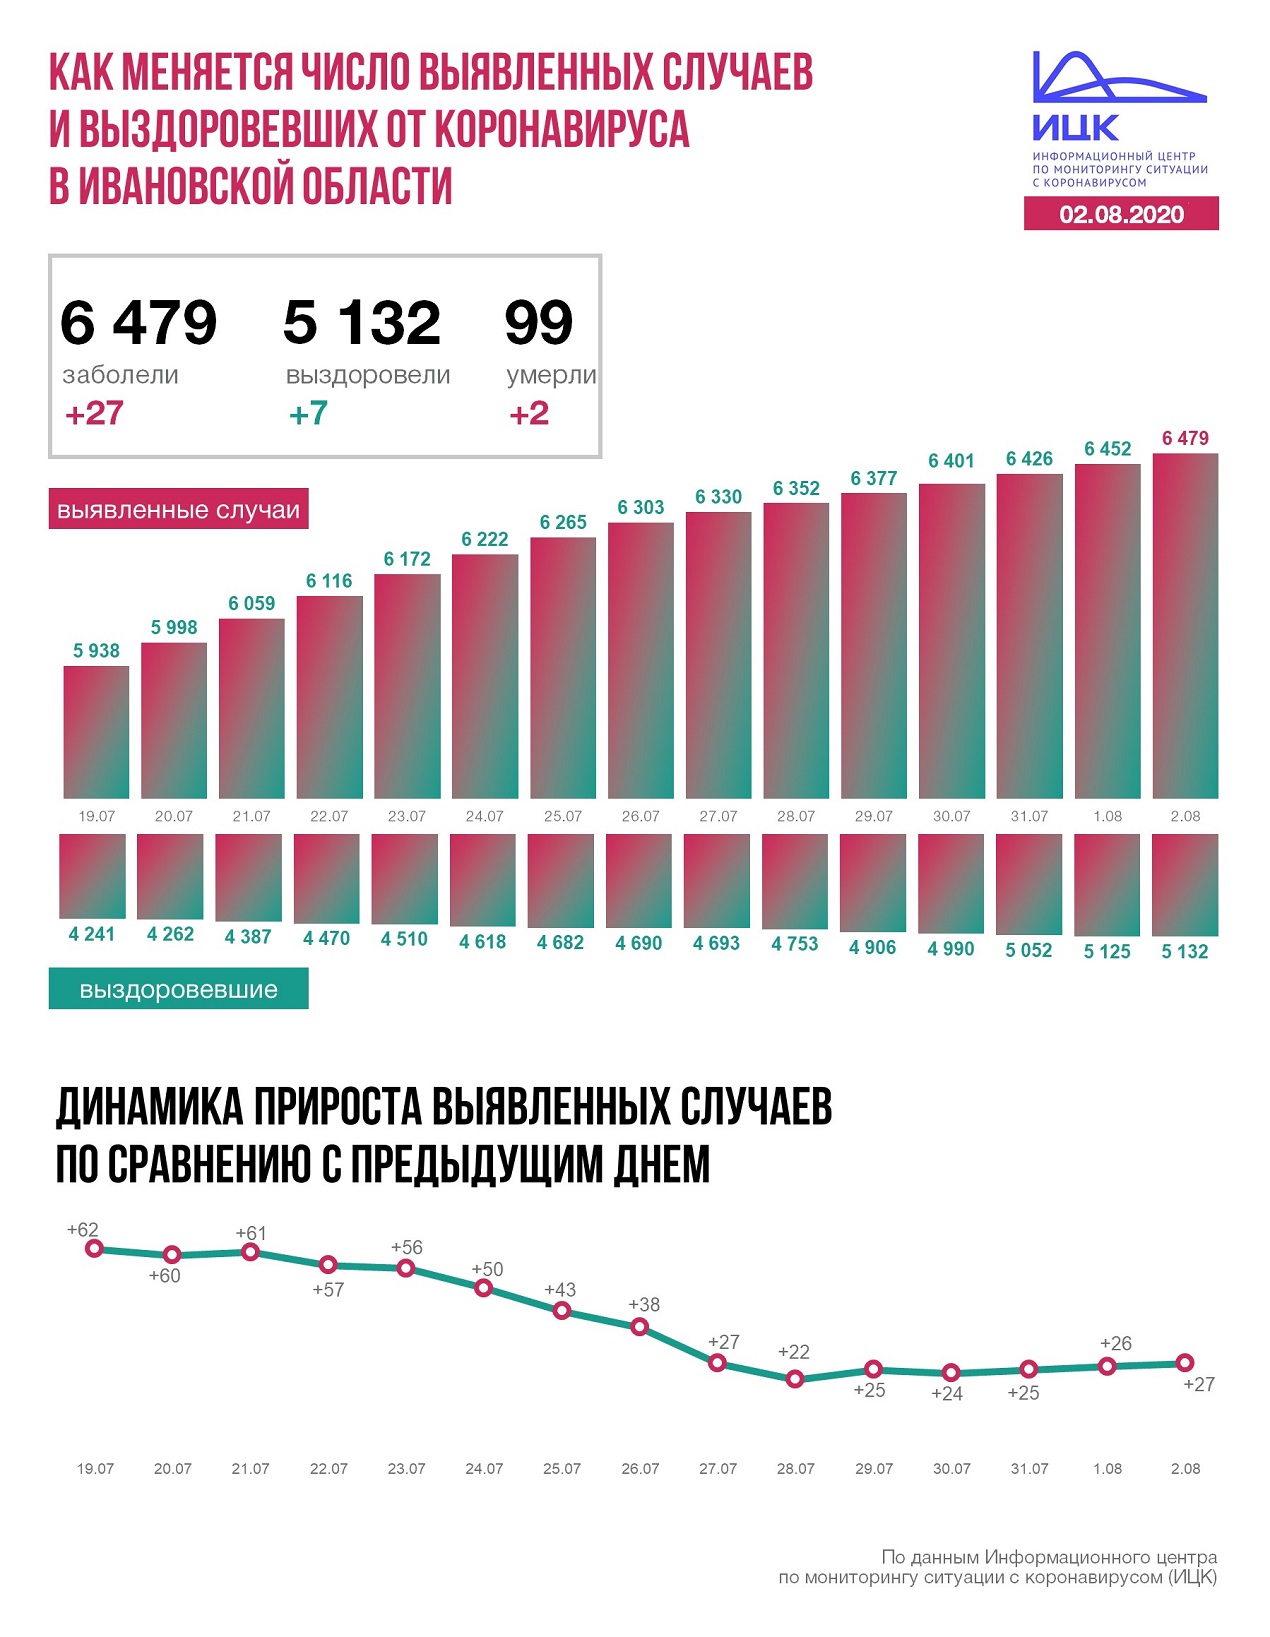 Прирост больных COVID-19 в Ивановской области за последние сутки составил 27 человек